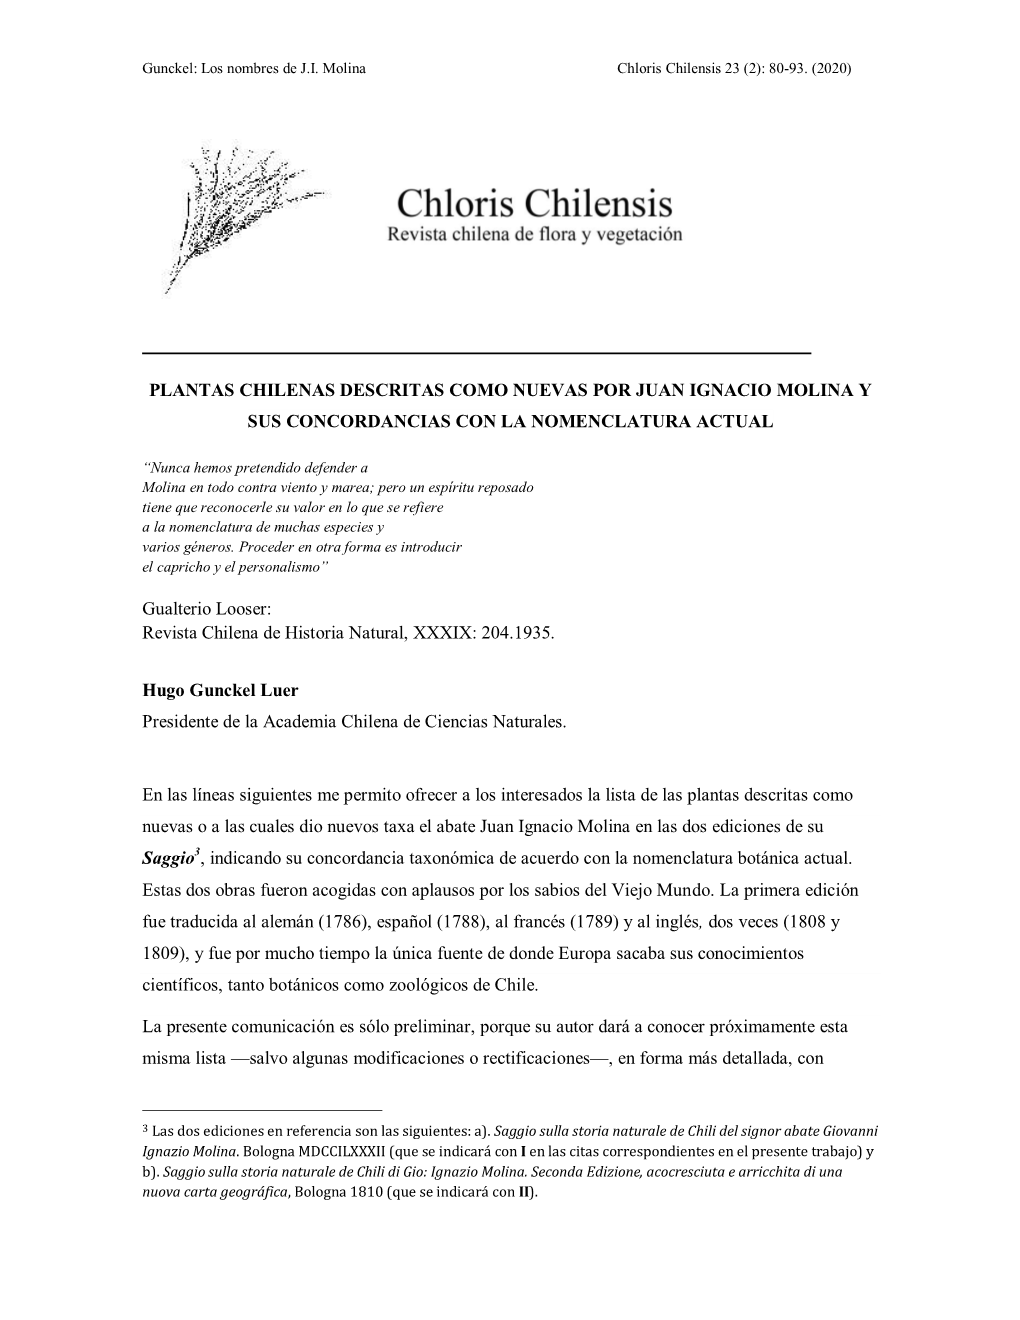 Plantas Chilenas Descritas Como Nuevas Por Juan Ignacio Molina Y Sus Concordancias Con La Nomenclatura Actual